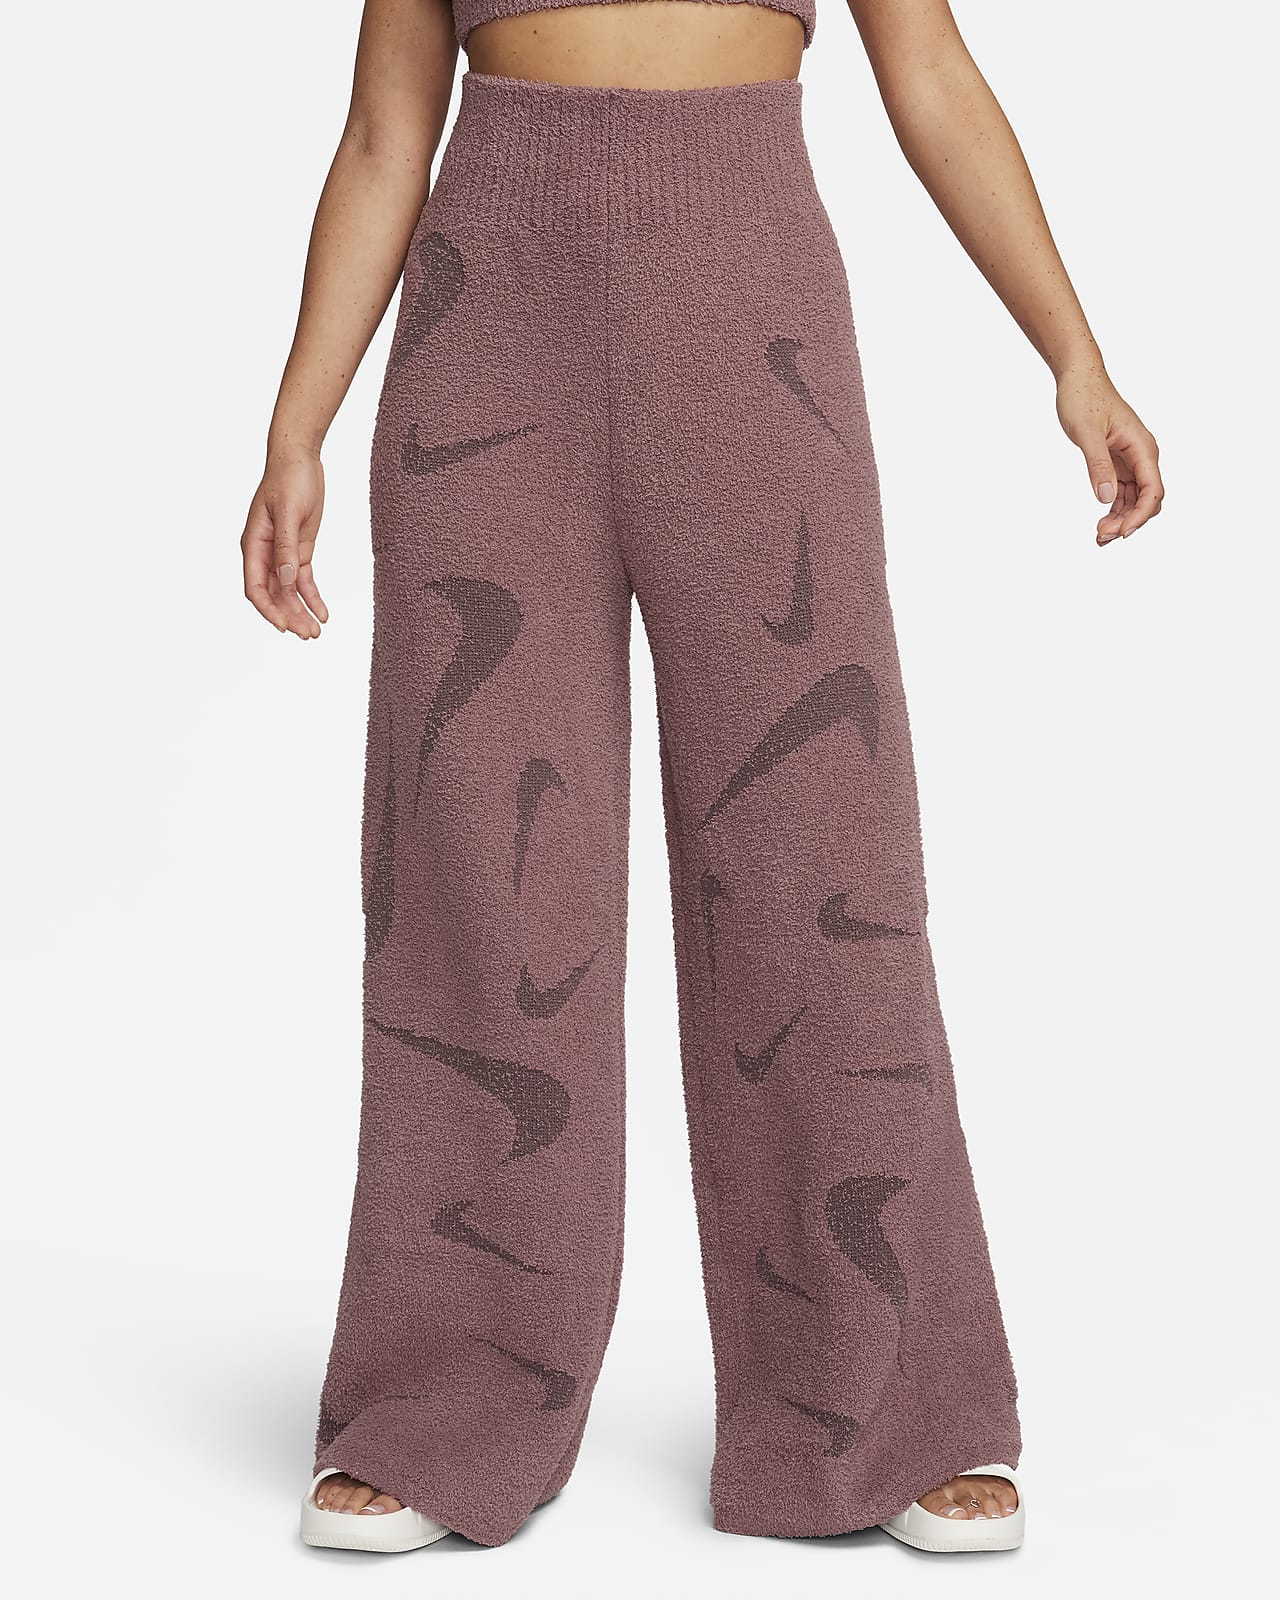 Nike Sportswear Phoenix Plush Women's High-Waisted Wide-Leg Cozy Fleece  Pants